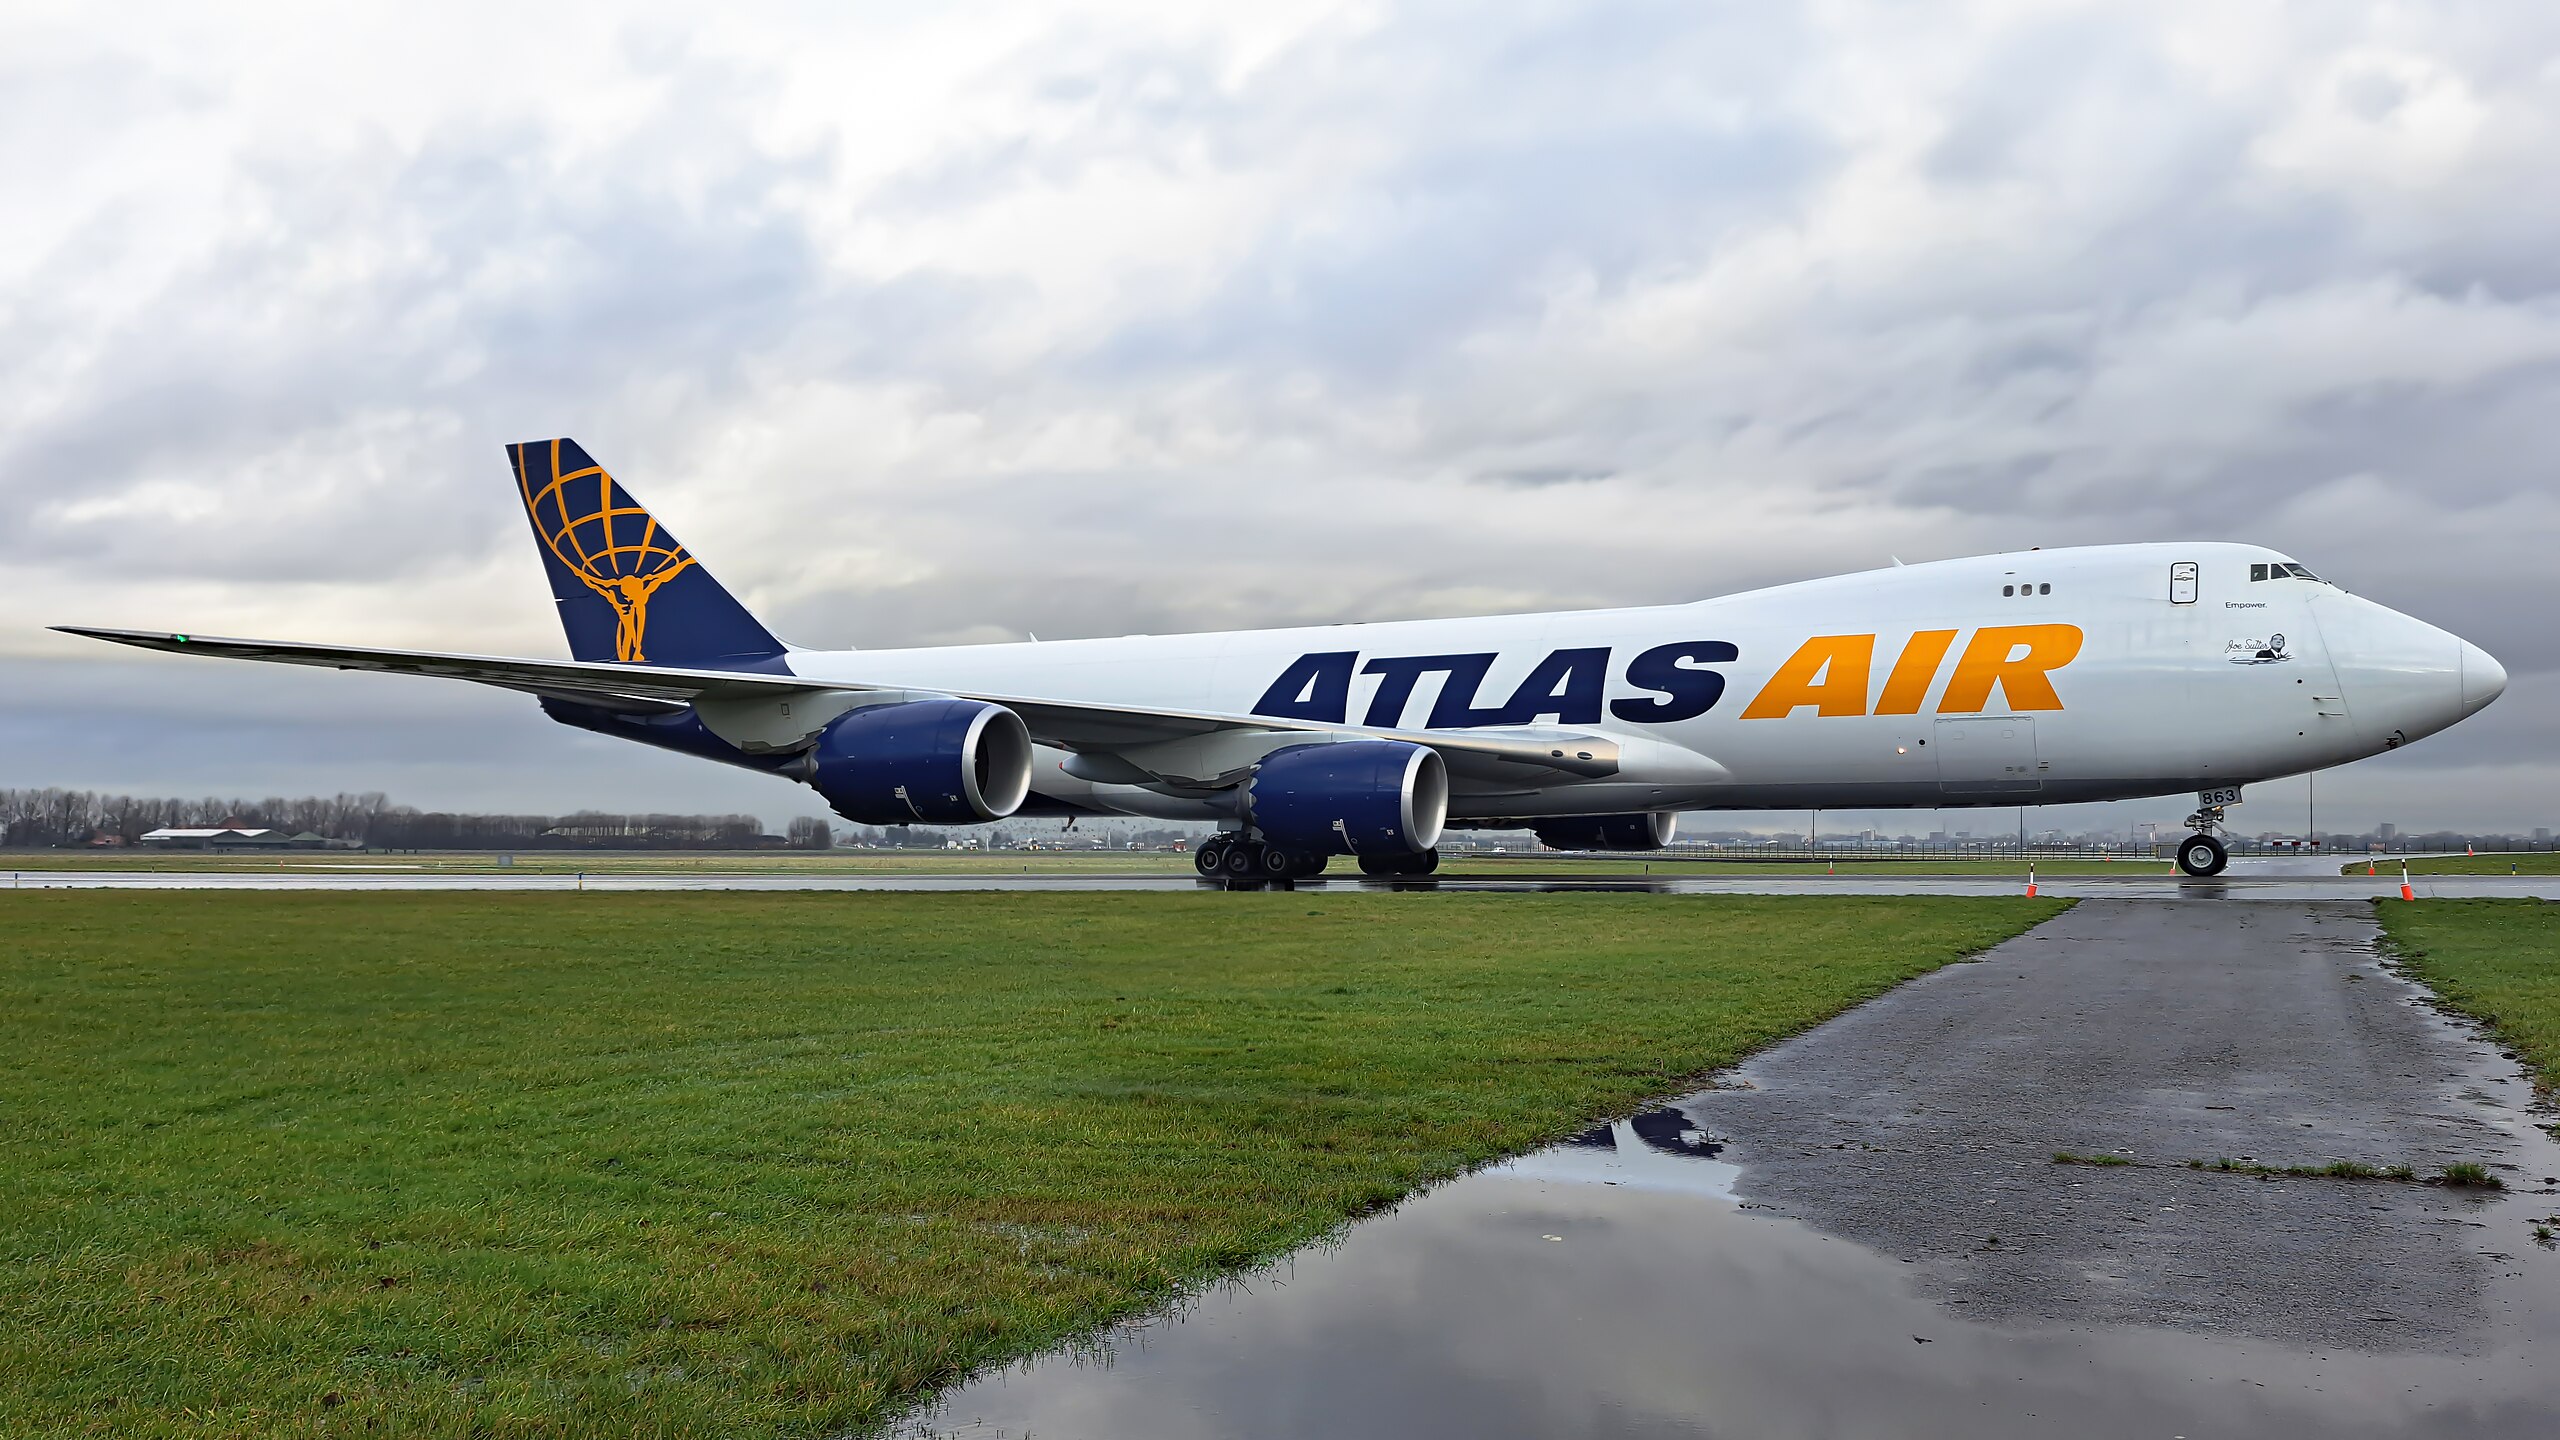 Atlas Air in the Spotlight